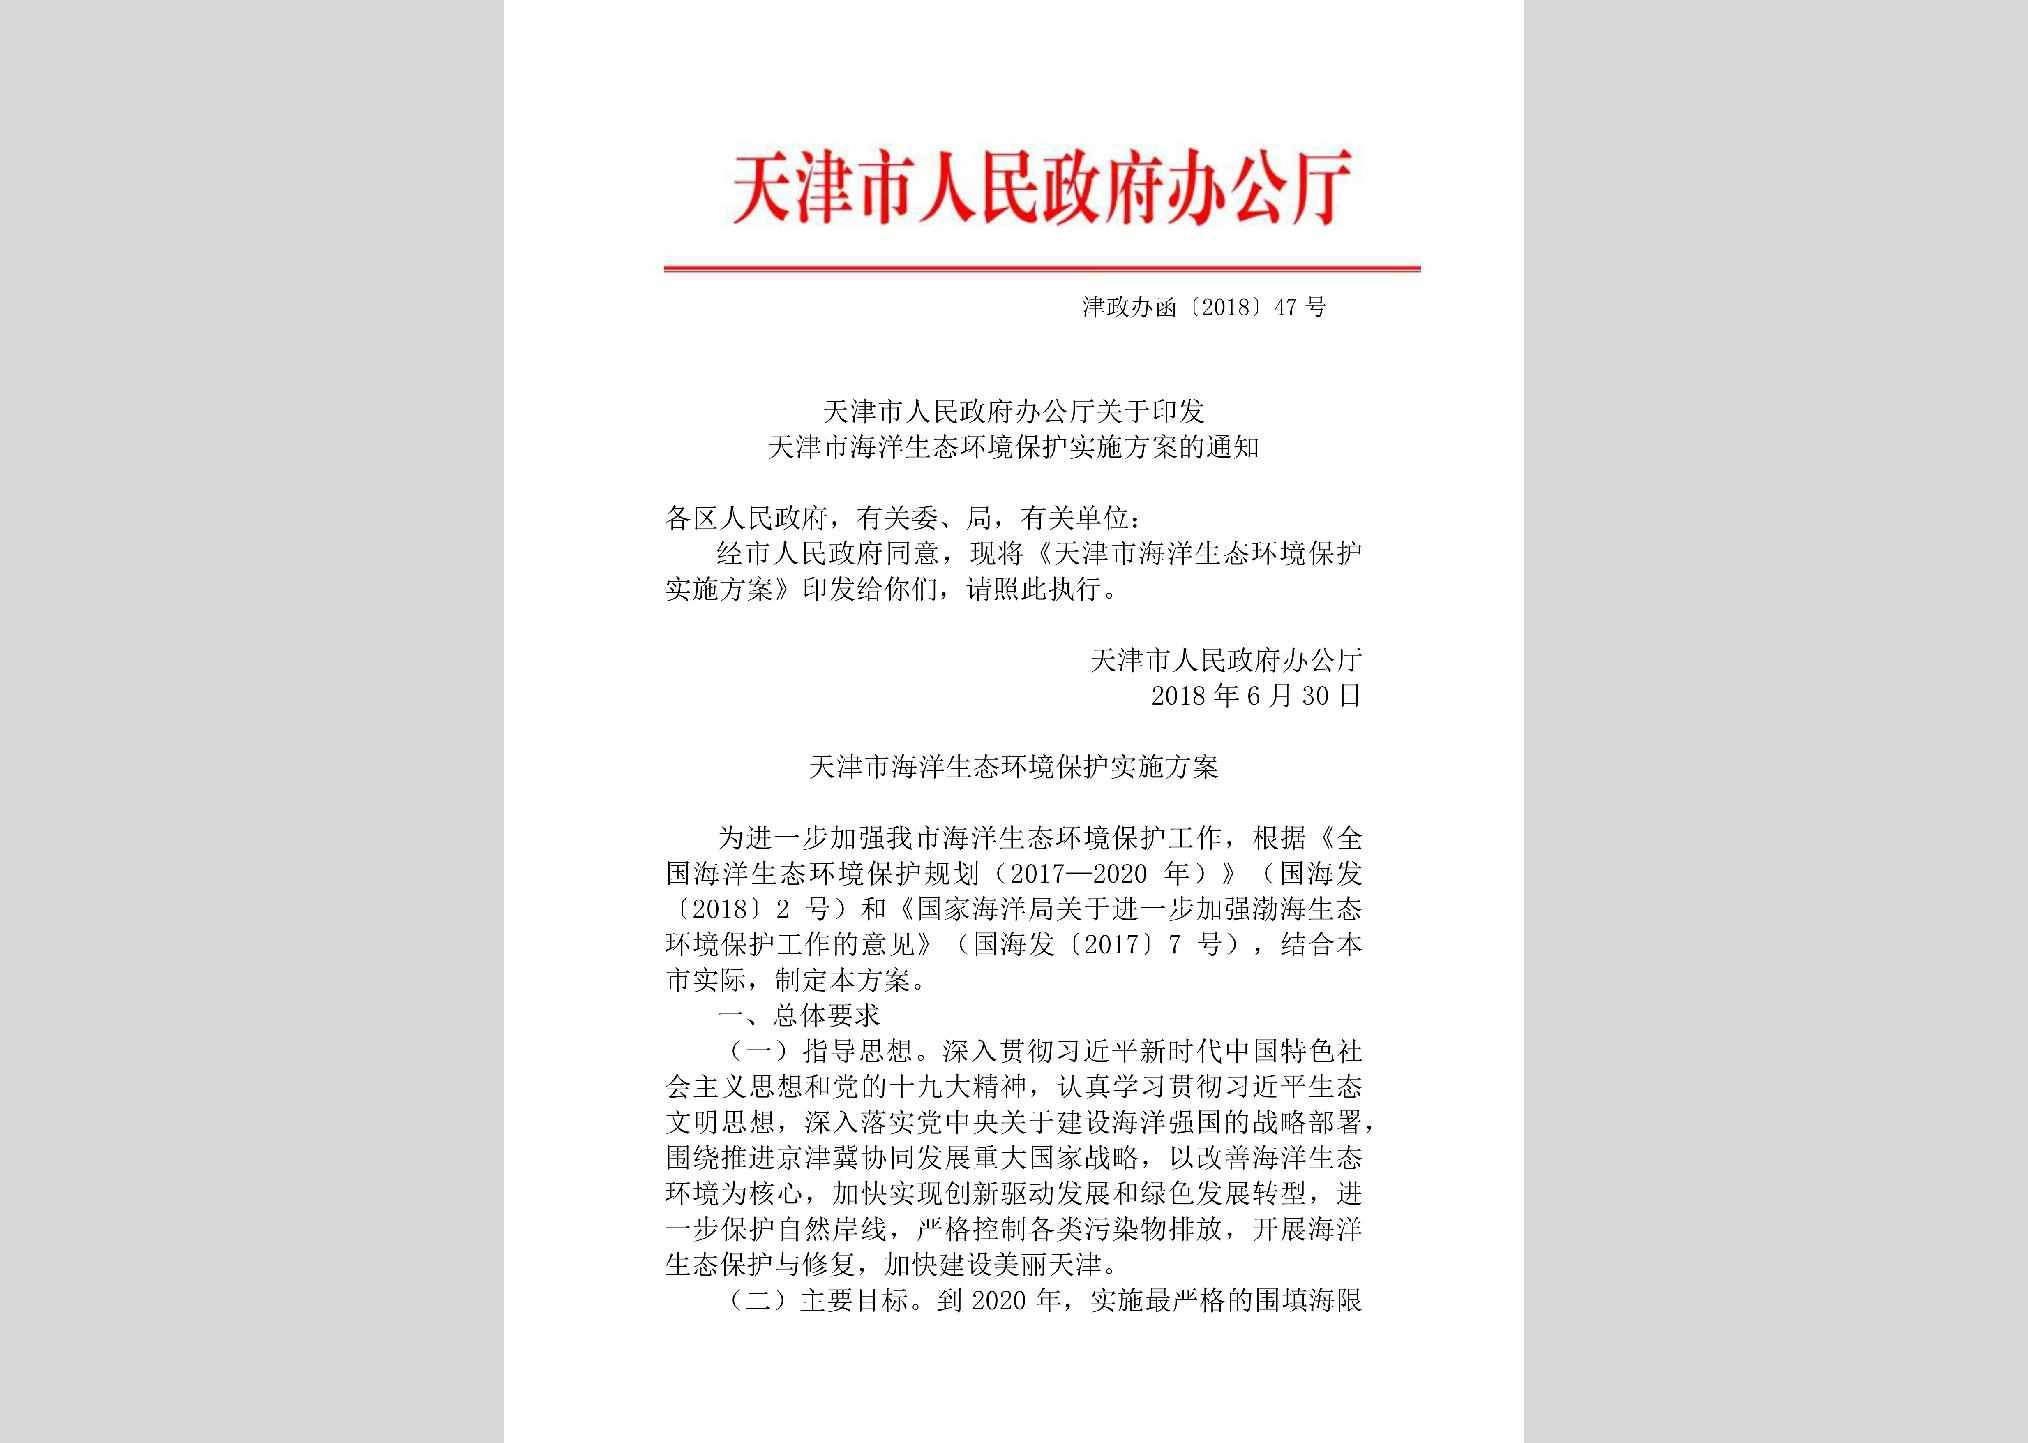 津政办函[2018]47号：天津市人民政府办公厅关于印发天津市海洋生态环境保护实施方案的通知